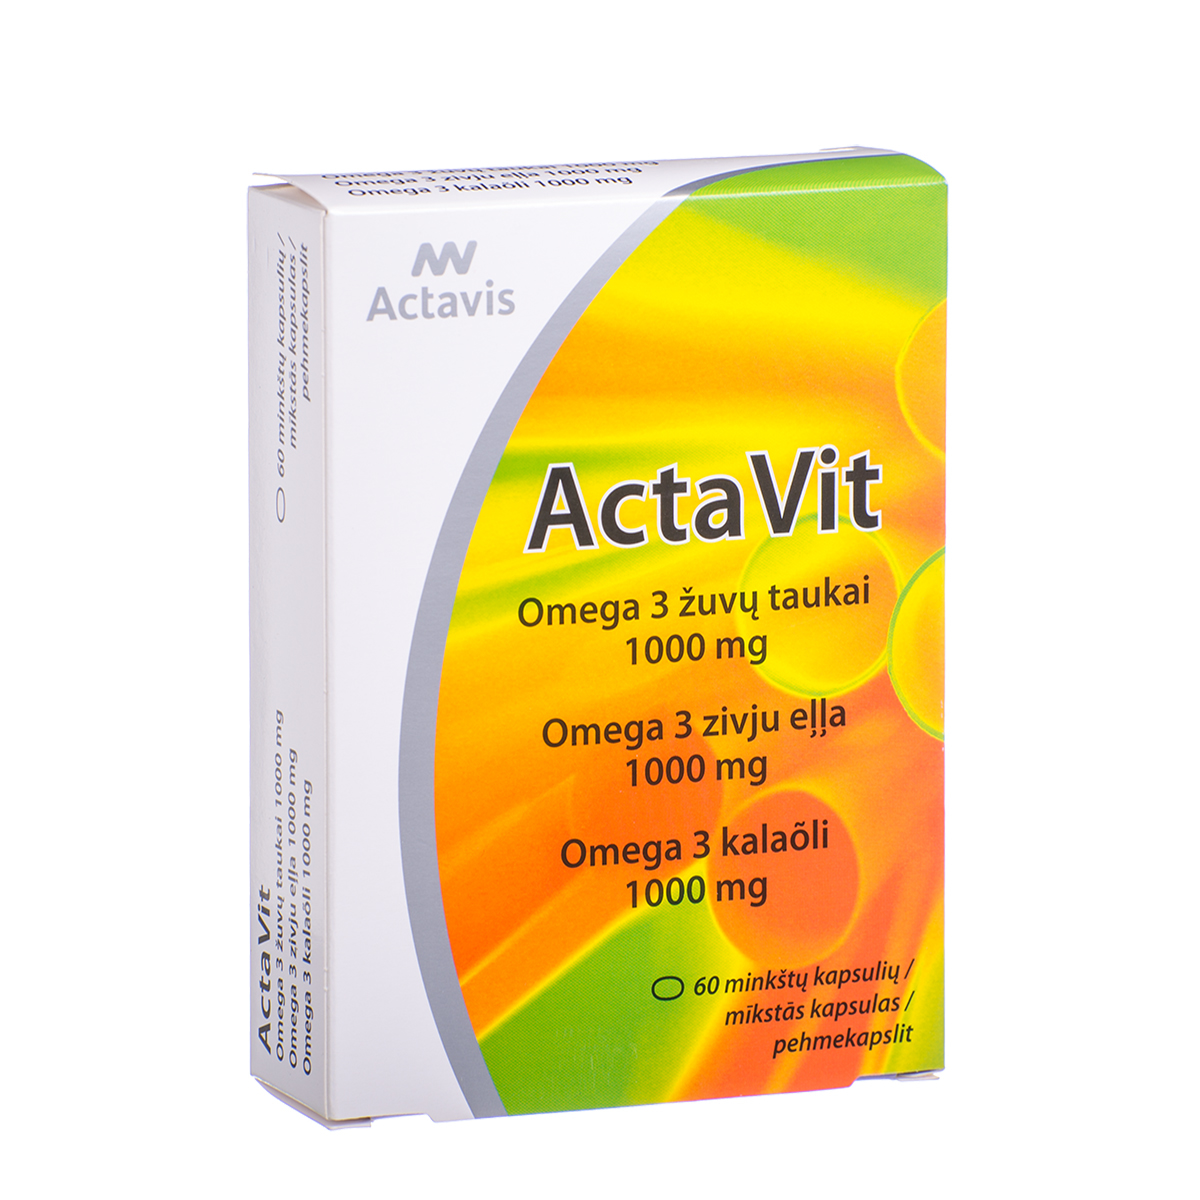 ACTAVIS ACTAVIT ŽUVŲ TAUKAI OMEGA-3, 1000 mg, 60 minkštųjų kapsulių